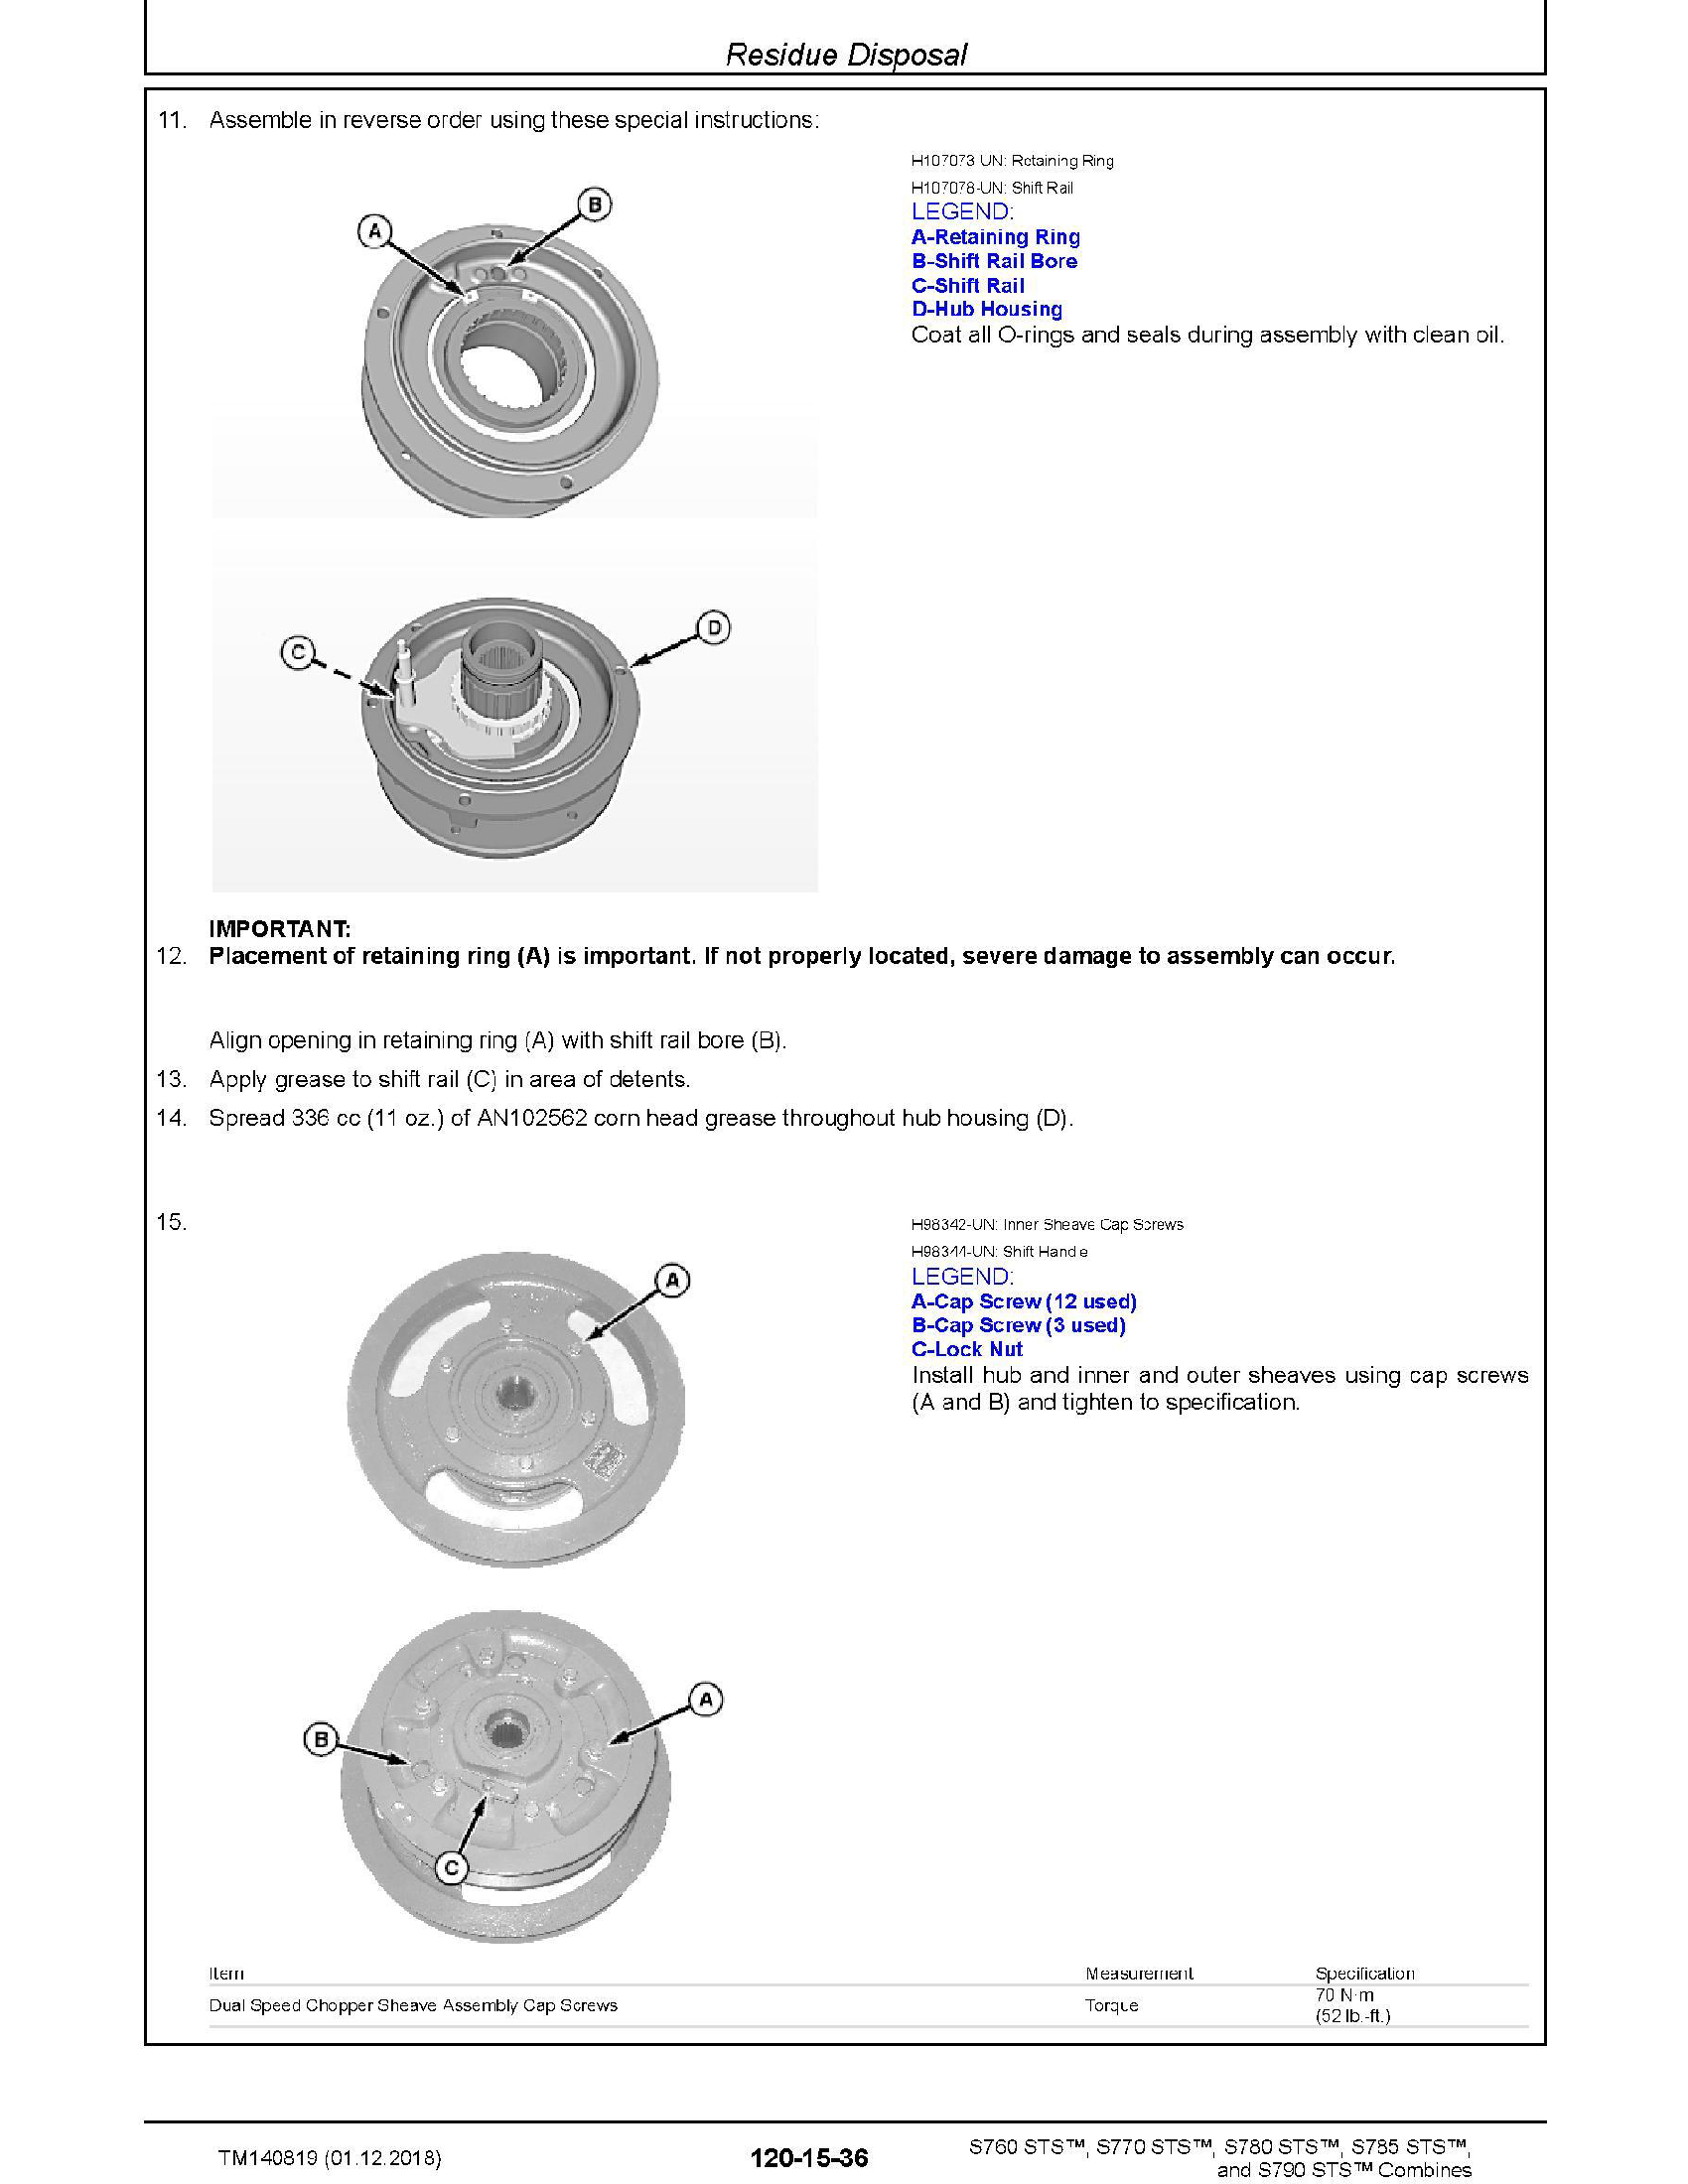 John Deere S790 manual pdf